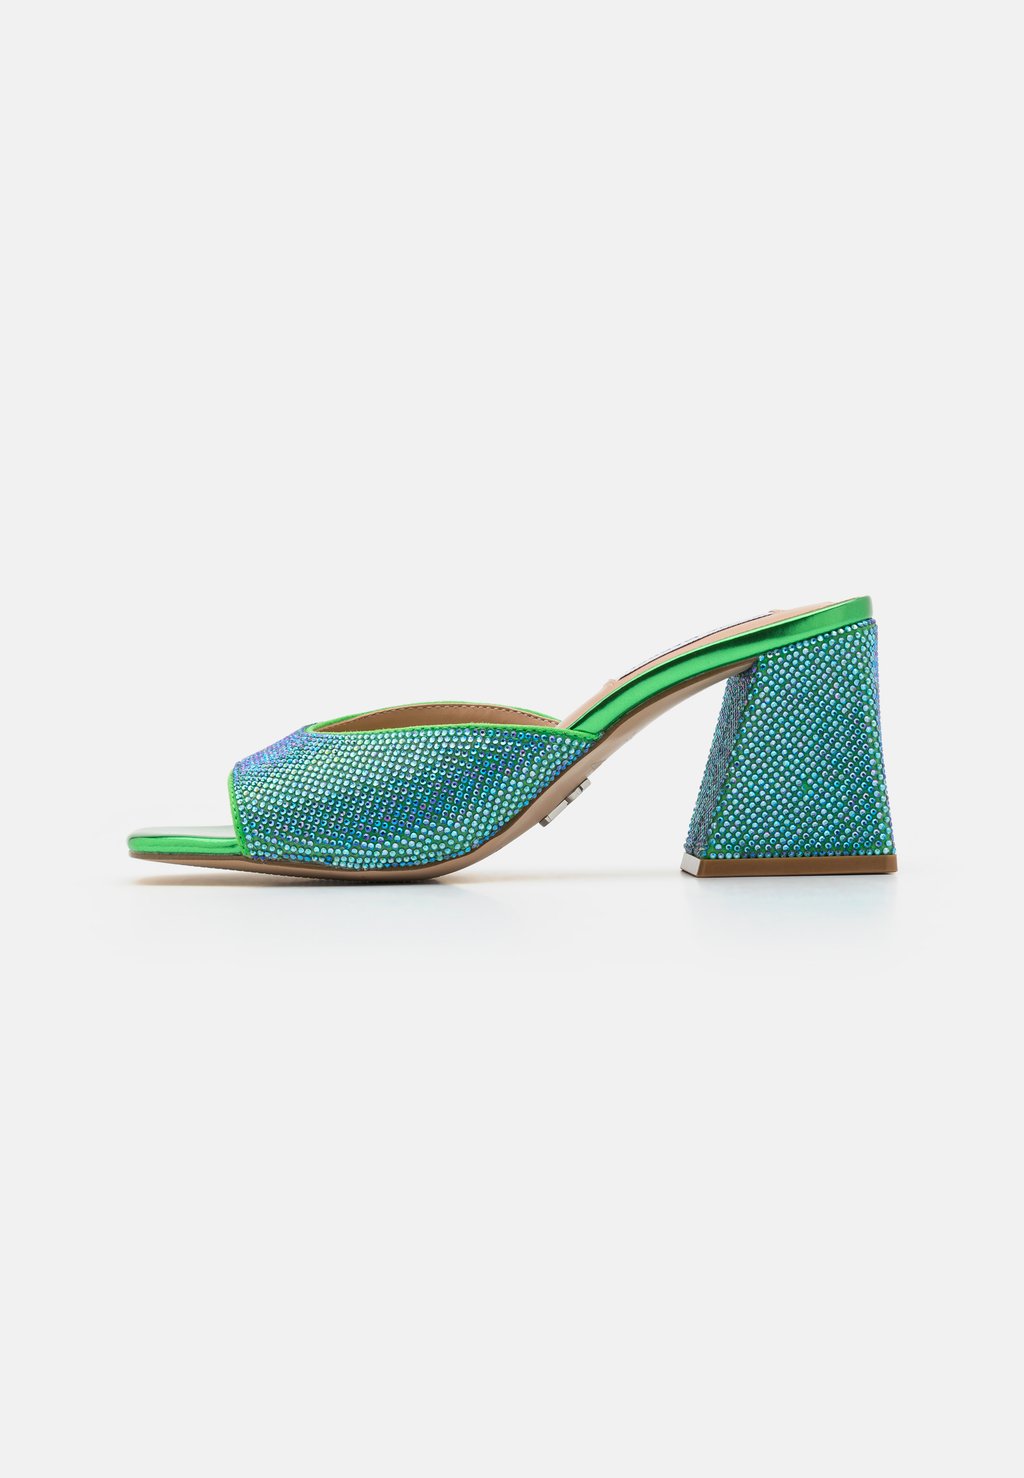 Высокие туфли-мюли GLOWING Steve Madden, цвет green/blue iridescent